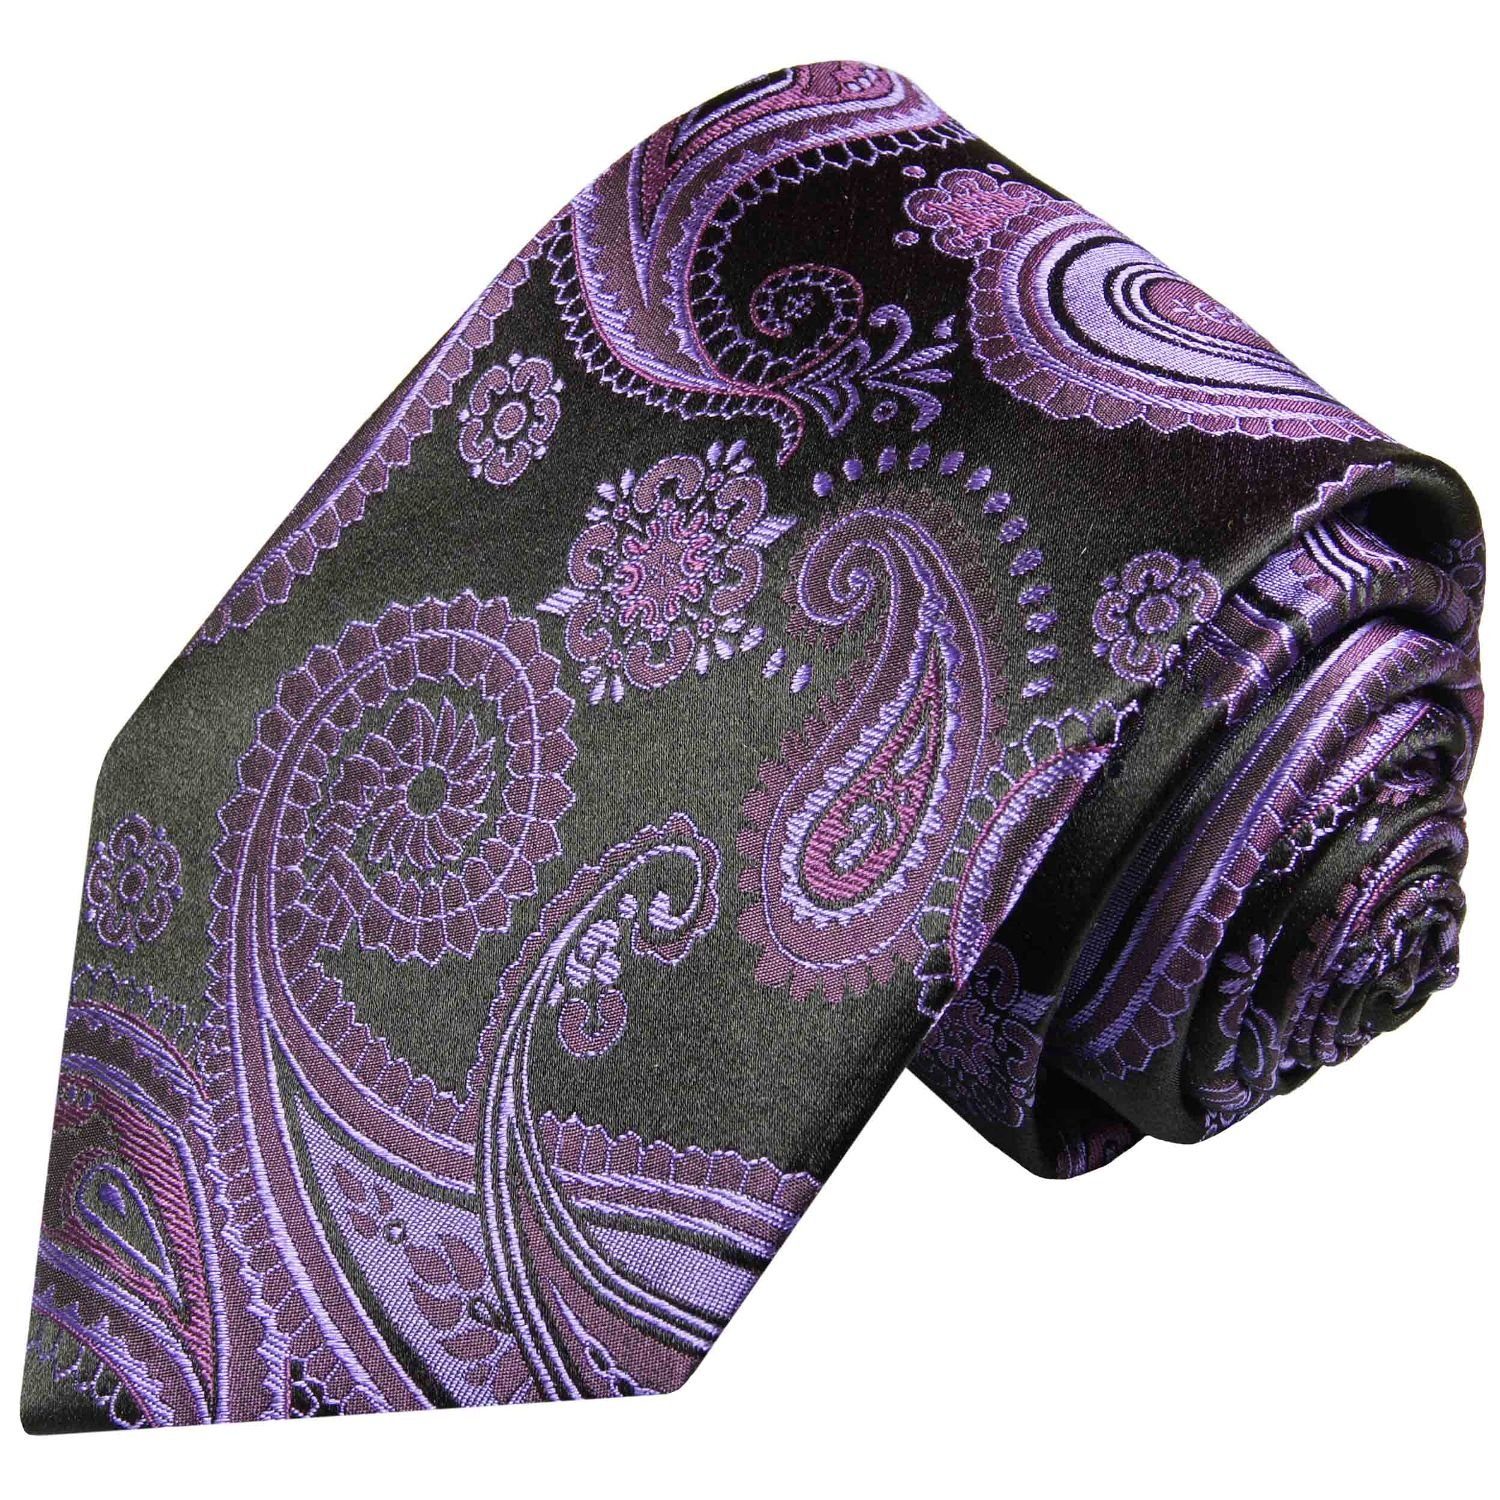 Paul Malone Krawatte Seide lila brokat Schmal Elegante paisley Herren Seidenkrawatte schwarz 363 (6cm), 100% Schlips violett